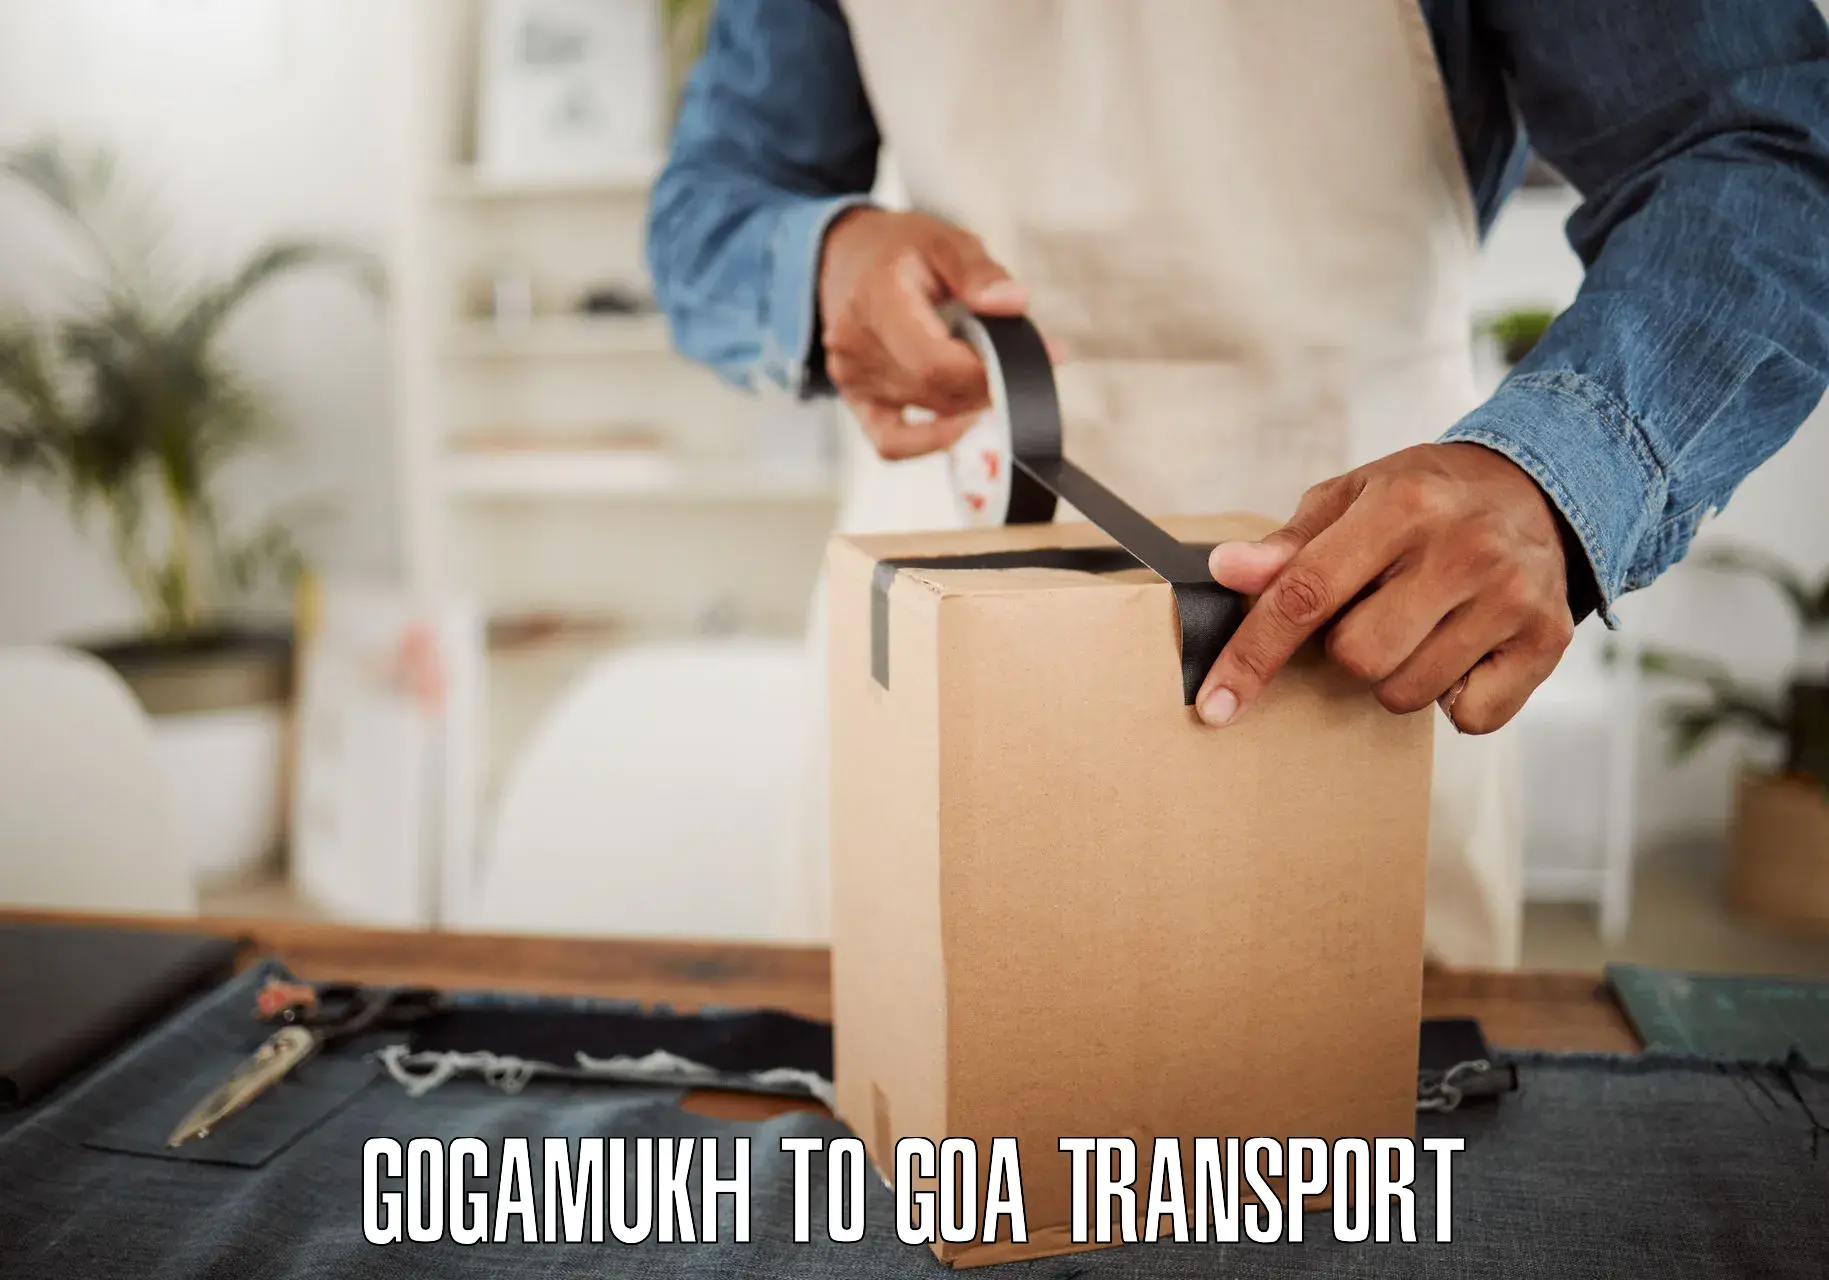 Express transport services Gogamukh to IIT Goa